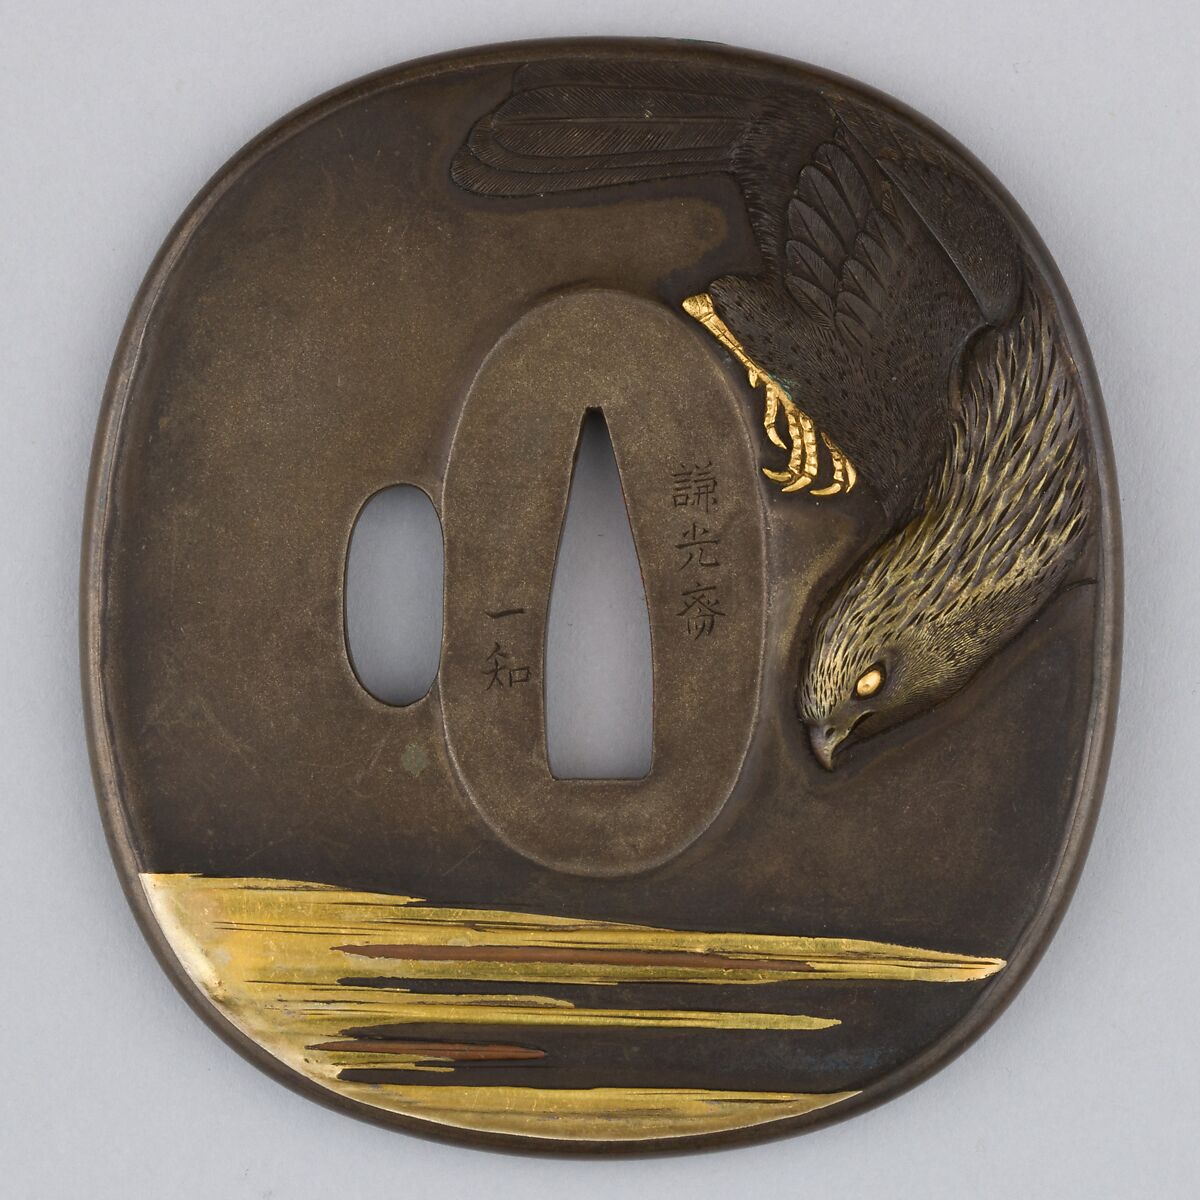 Sword Guard (Tsuba), Copper-silver alloy (shibuichi), copper-gold alloy (shakudō), gold, copper, Japanese 